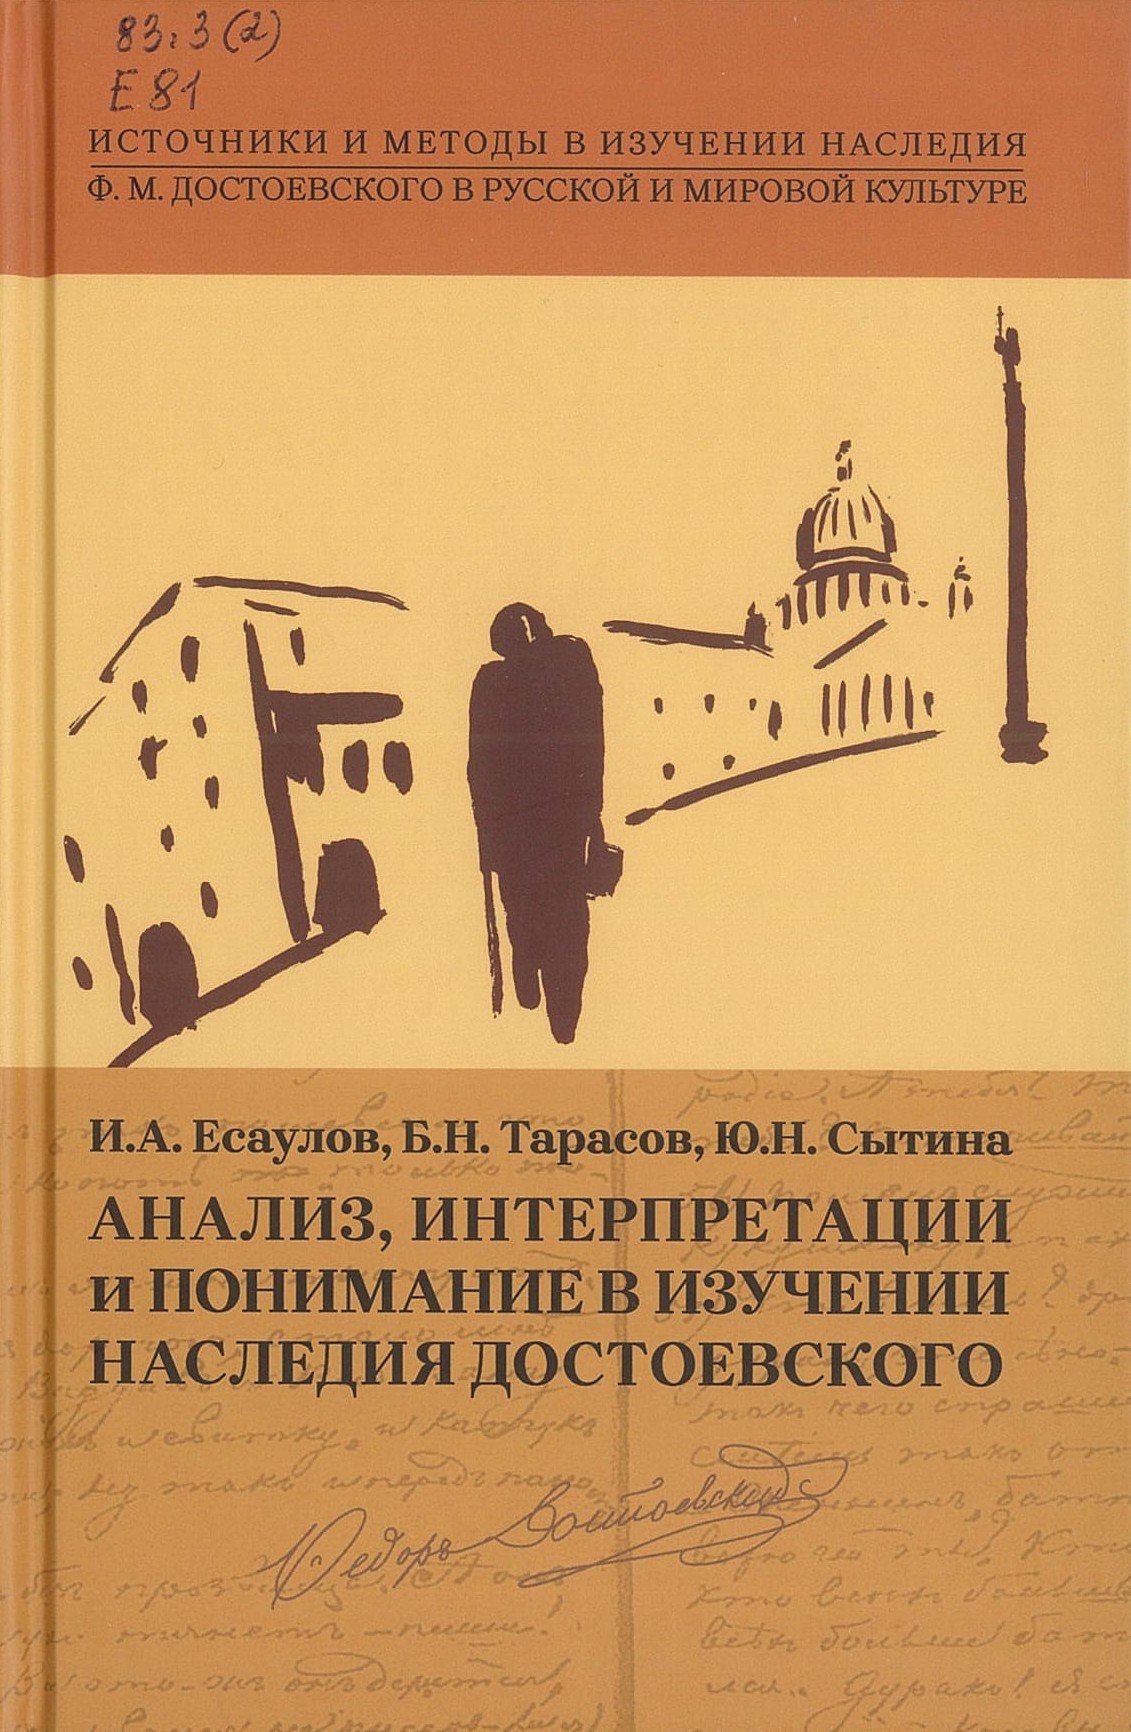 Есаулов, И. А. Анализ, интерпретации и понимание в изучении наследия Достоевского